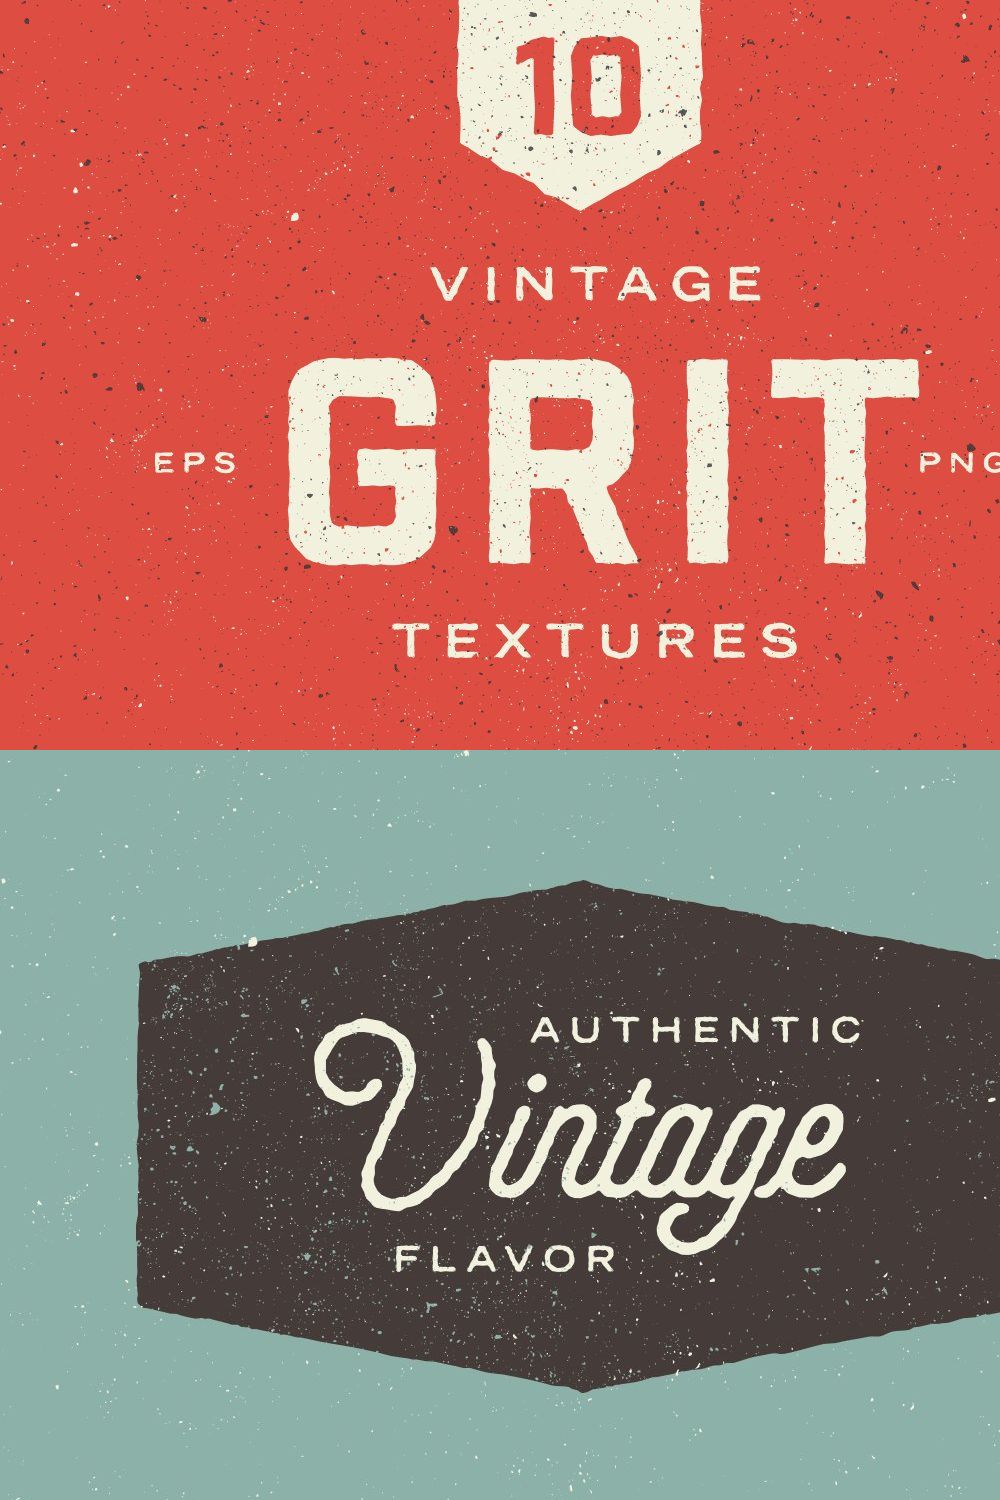 Vintage Grit Textures pinterest preview image.